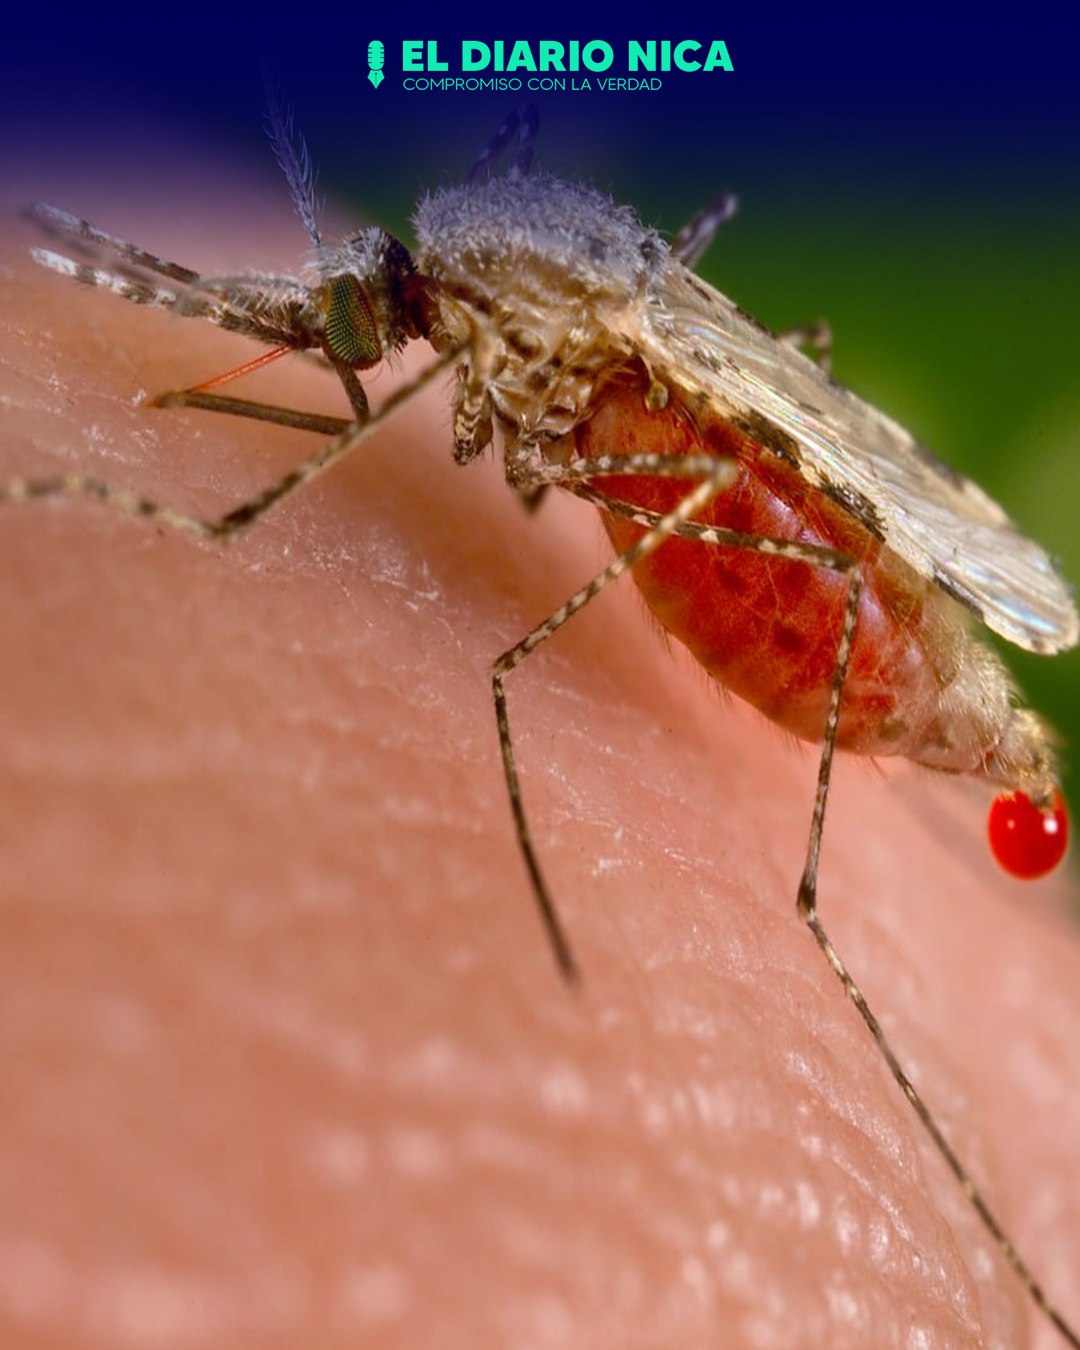 Belice declarado país libre de malaria